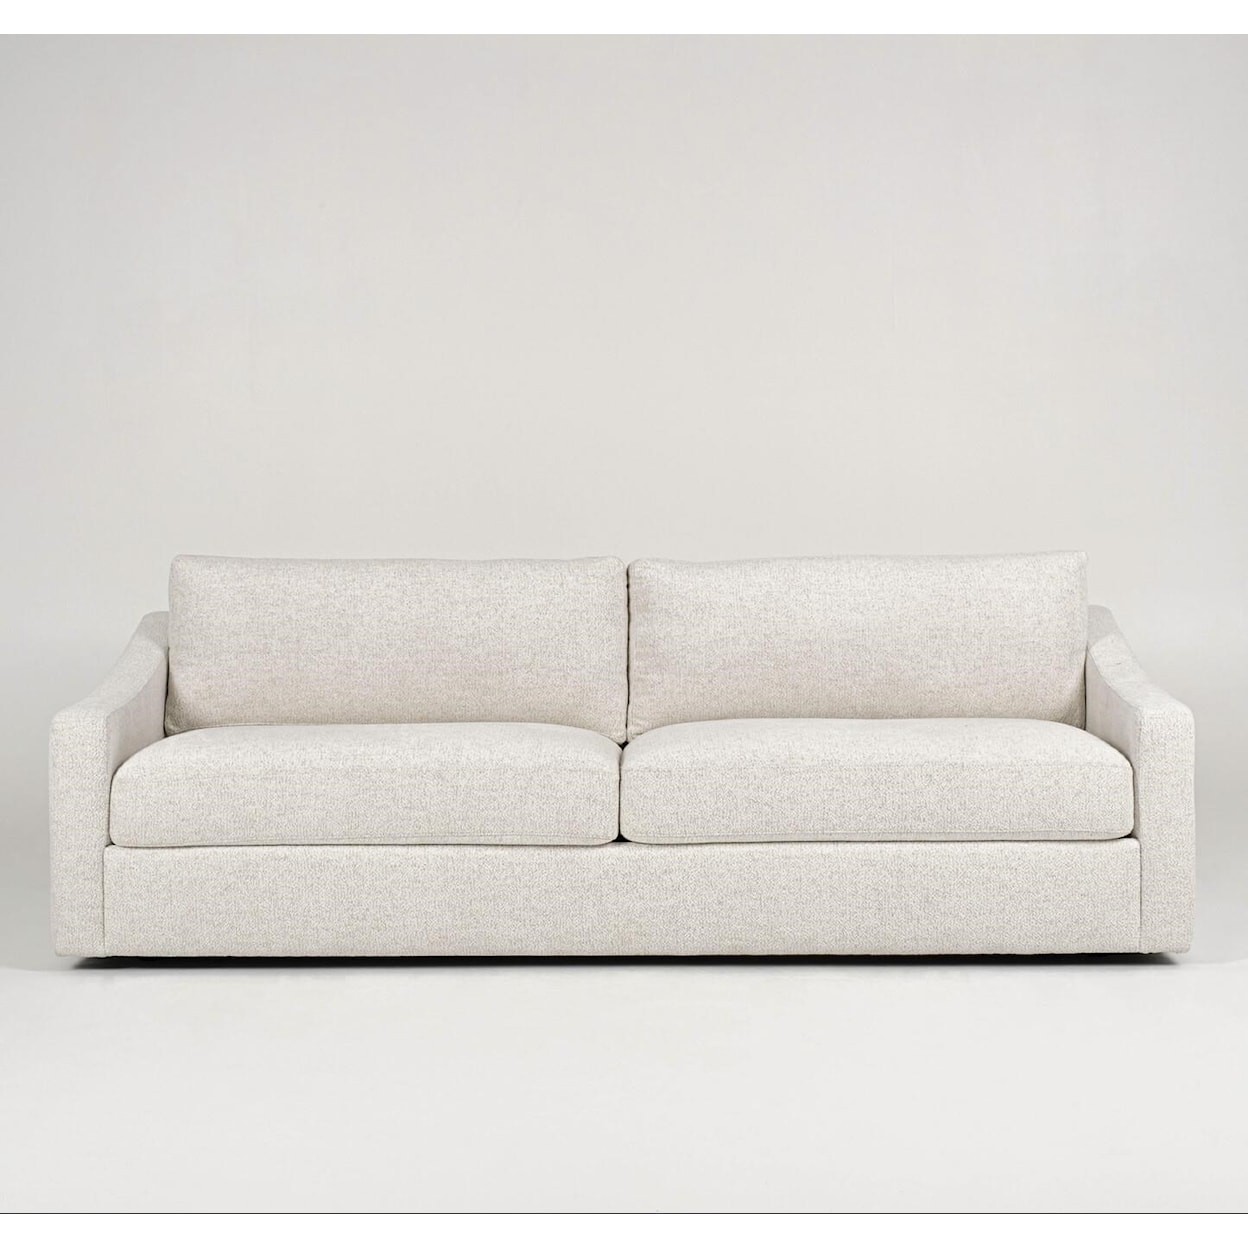 American Leather Doran 2-Seat Sofa